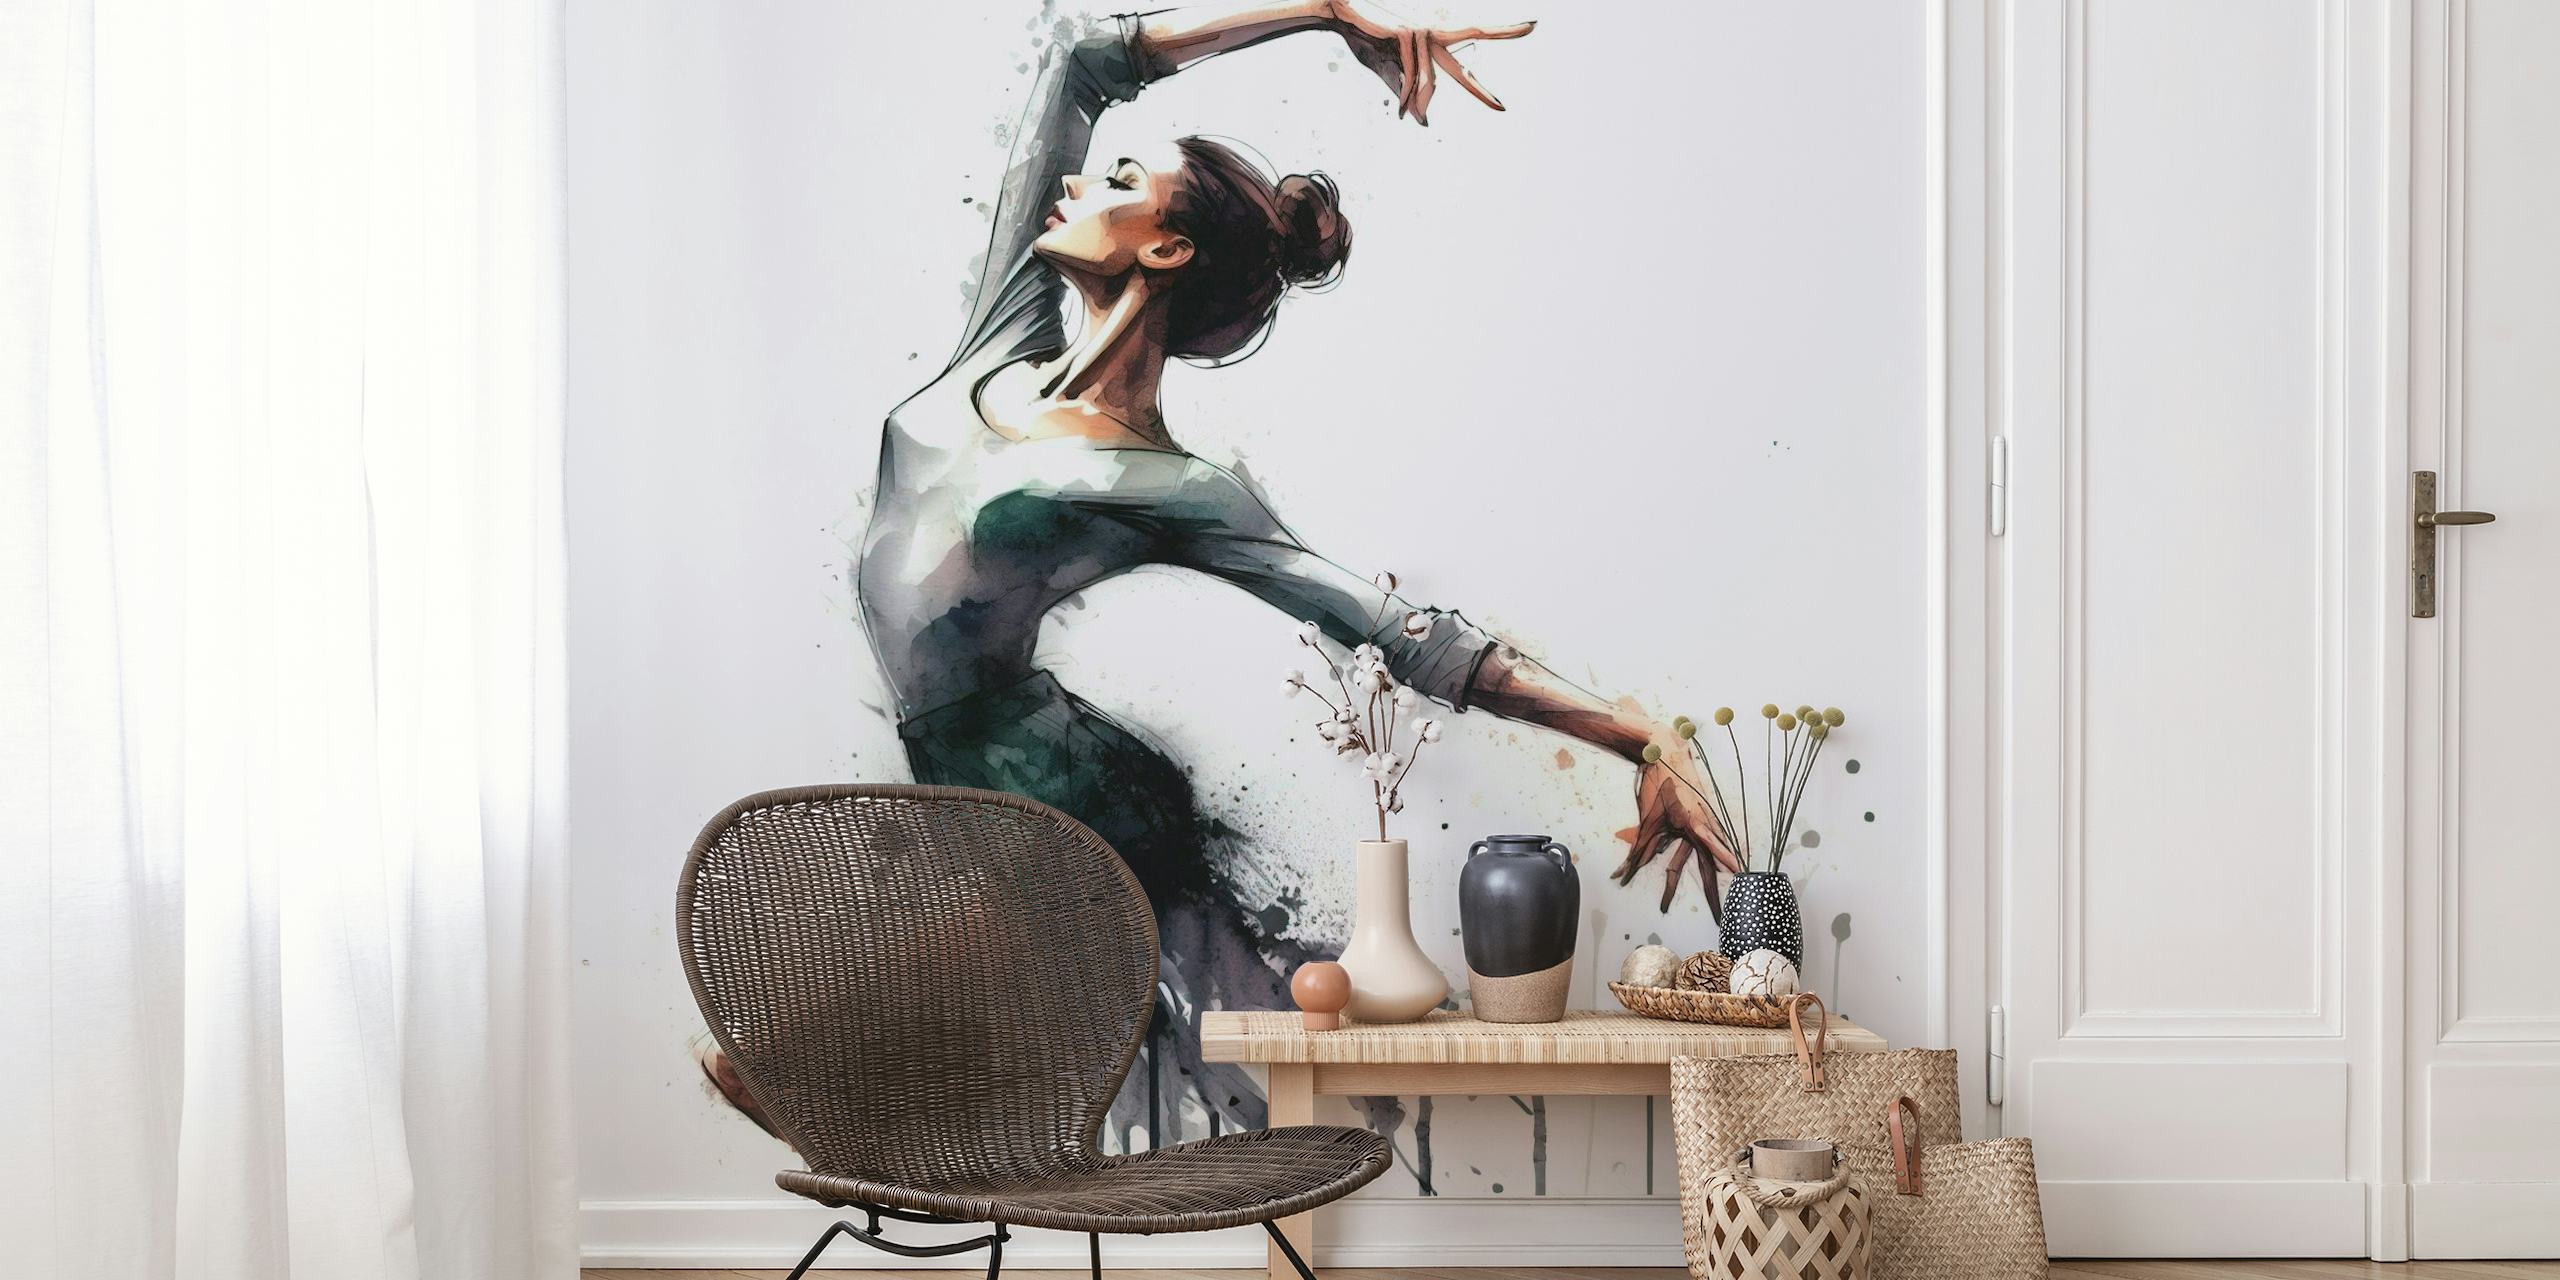 Fotomural artístico en acuarela de una bailarina de ballet en movimiento